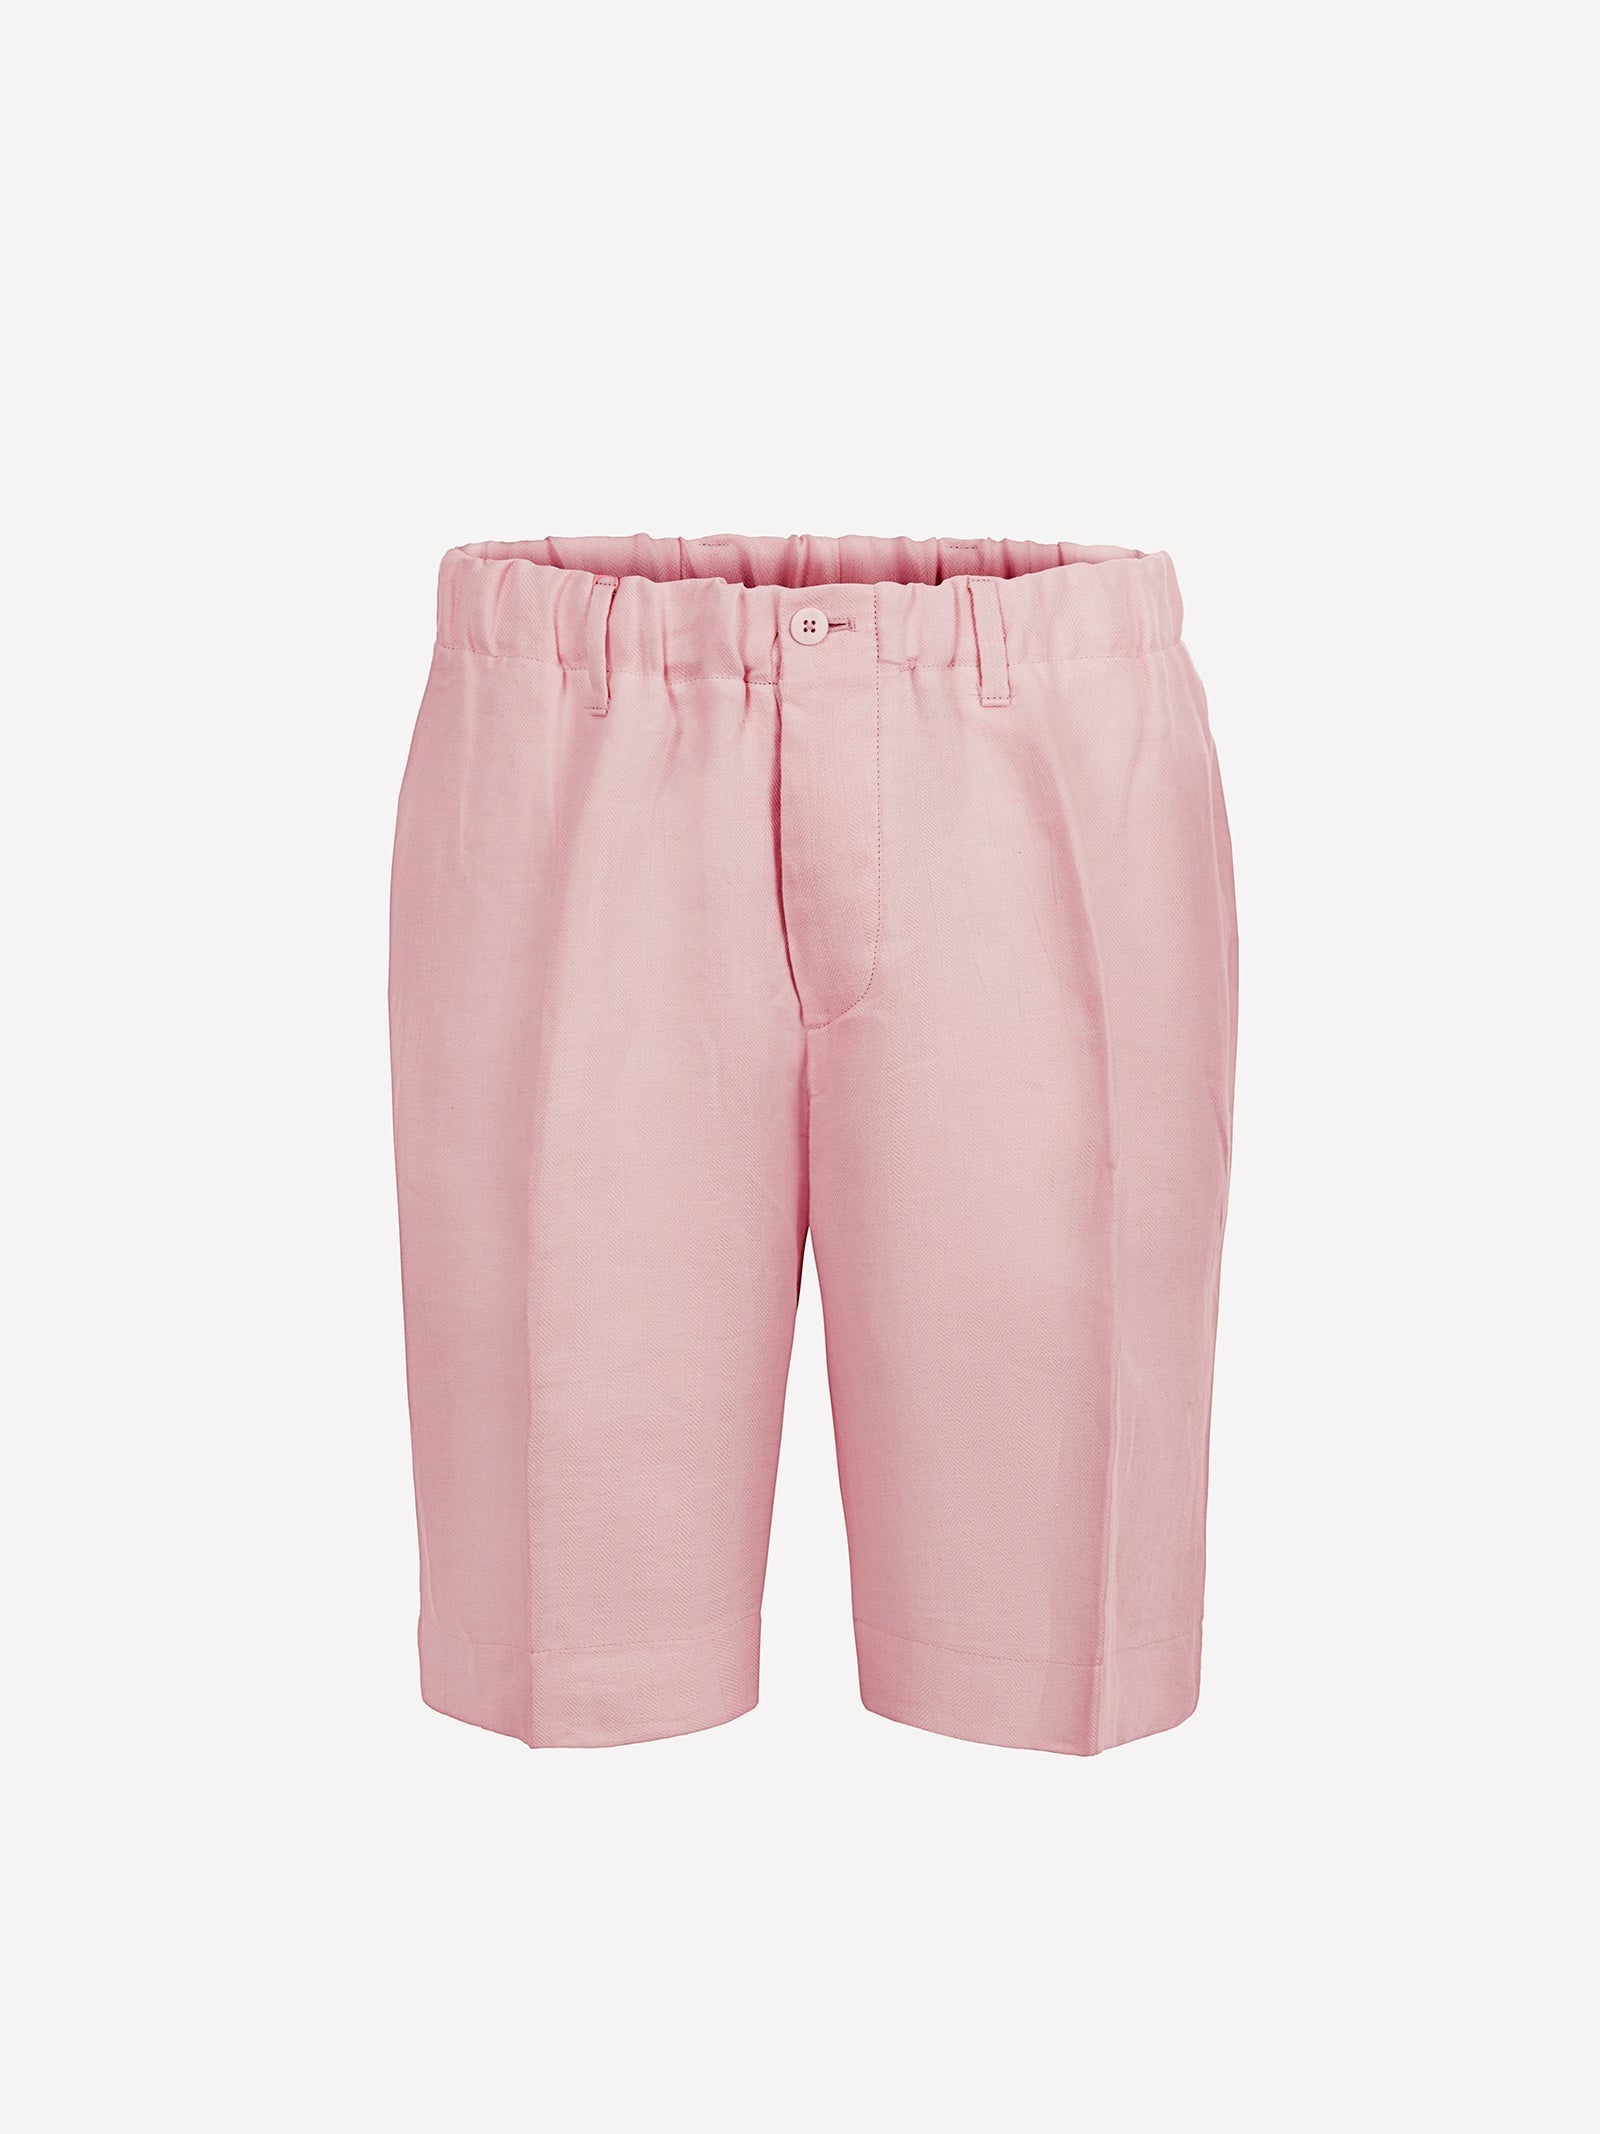 Bermuda Capri Linen man trousers Pink 100% Capri